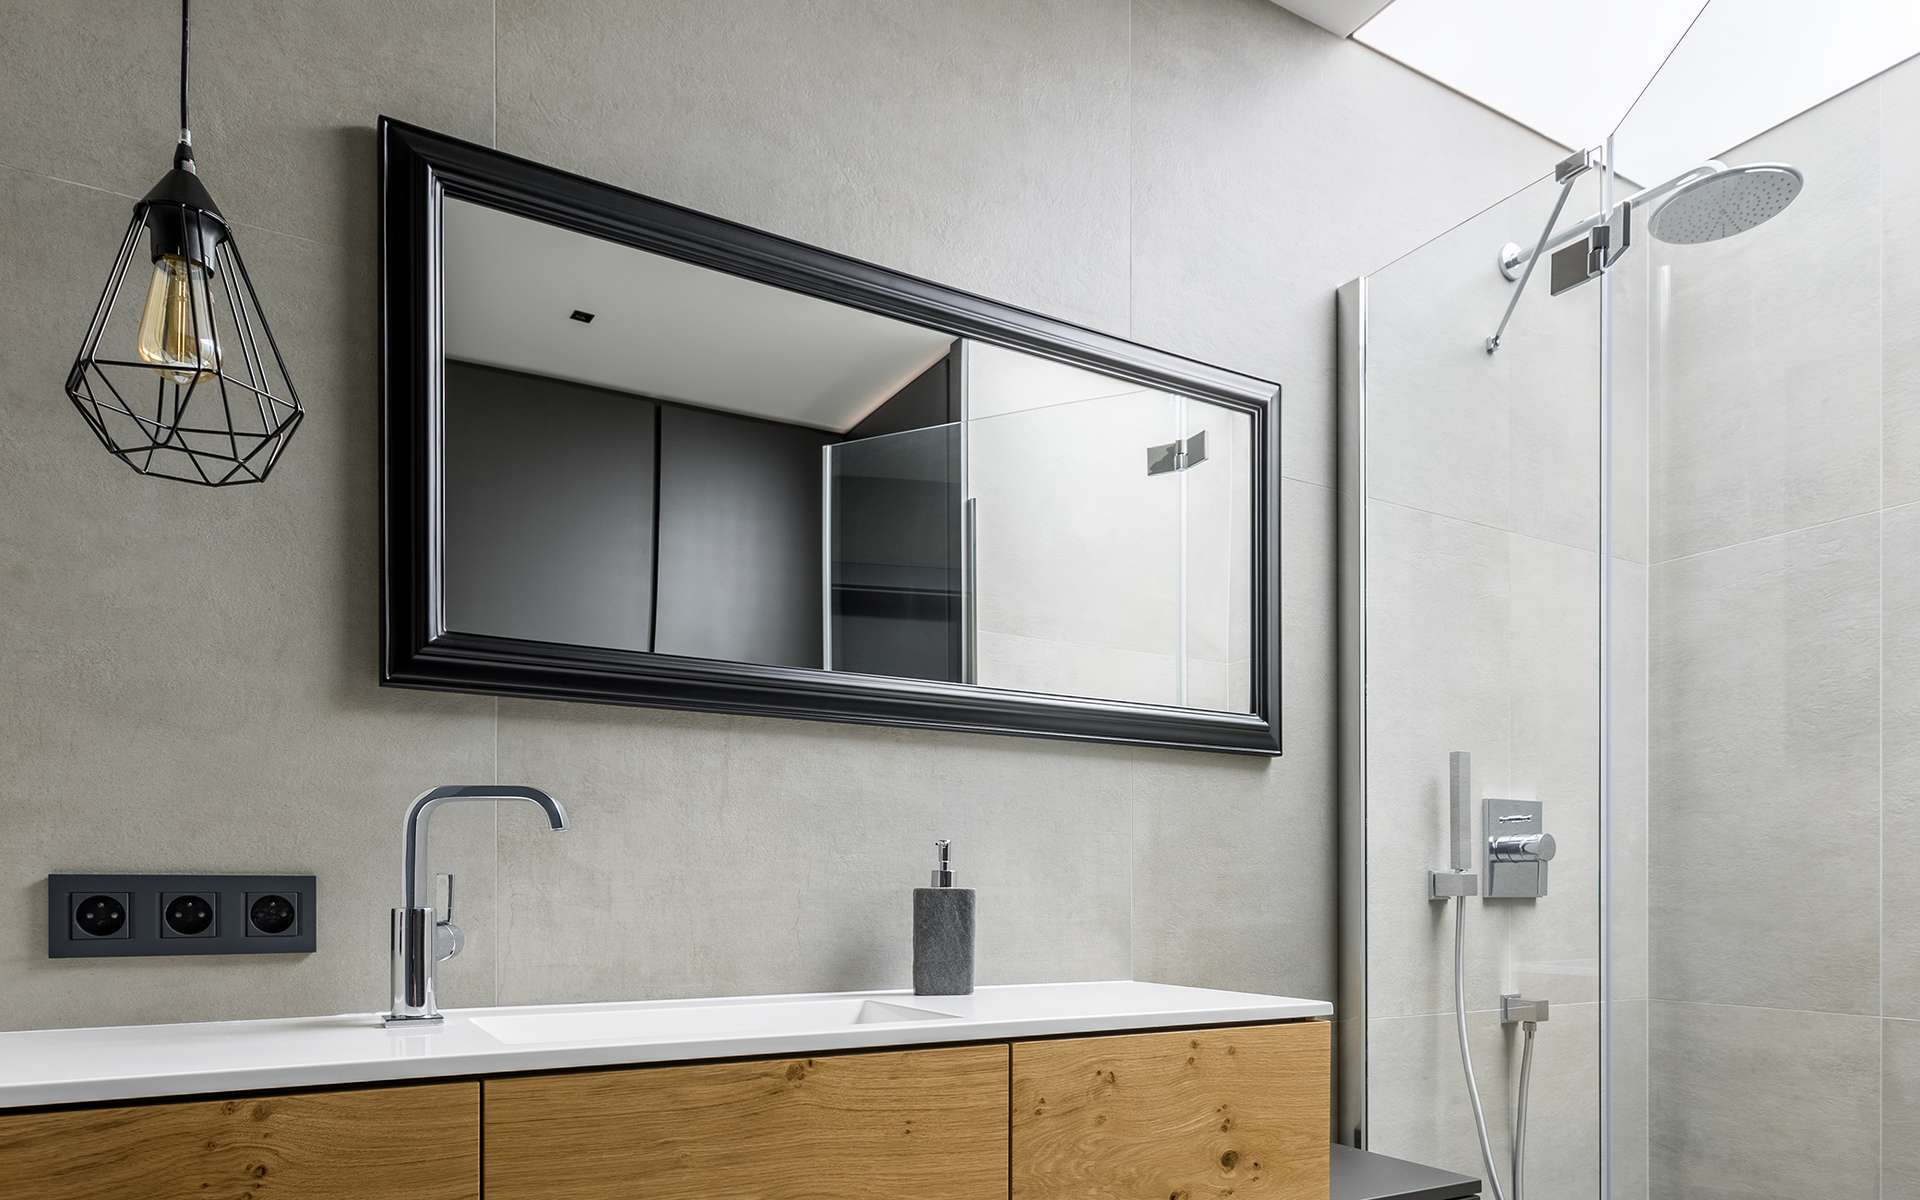 Pour profiter d'une salle de bains des plus agréables, les fabricants proposent des produits toujours plus innovants, à commencer par ce qui ne se voit pas au premier coup d'œil : l'étanchéité des réseaux d'alimentation. © Dariusz Jarzabek Fotografia, Adobe Stock